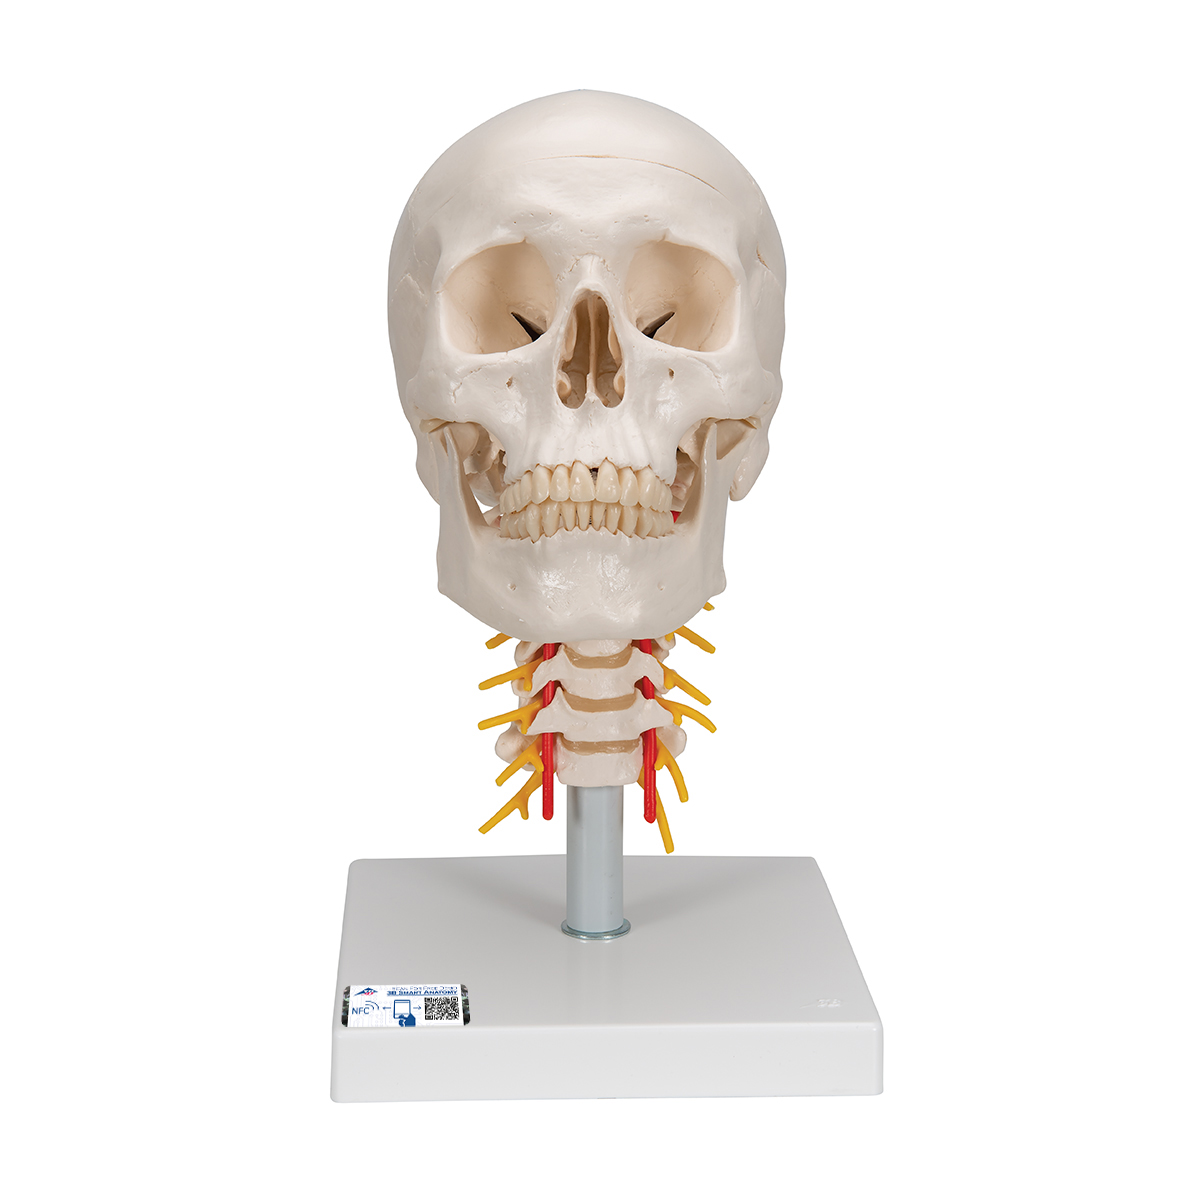 Menschliches Schädel Modell "Klassik" auf Halswirbelsäule, 4-teilig - 3B Smart Anatomy, Bestellnummer 1020160, A20/1, 3B Scientific